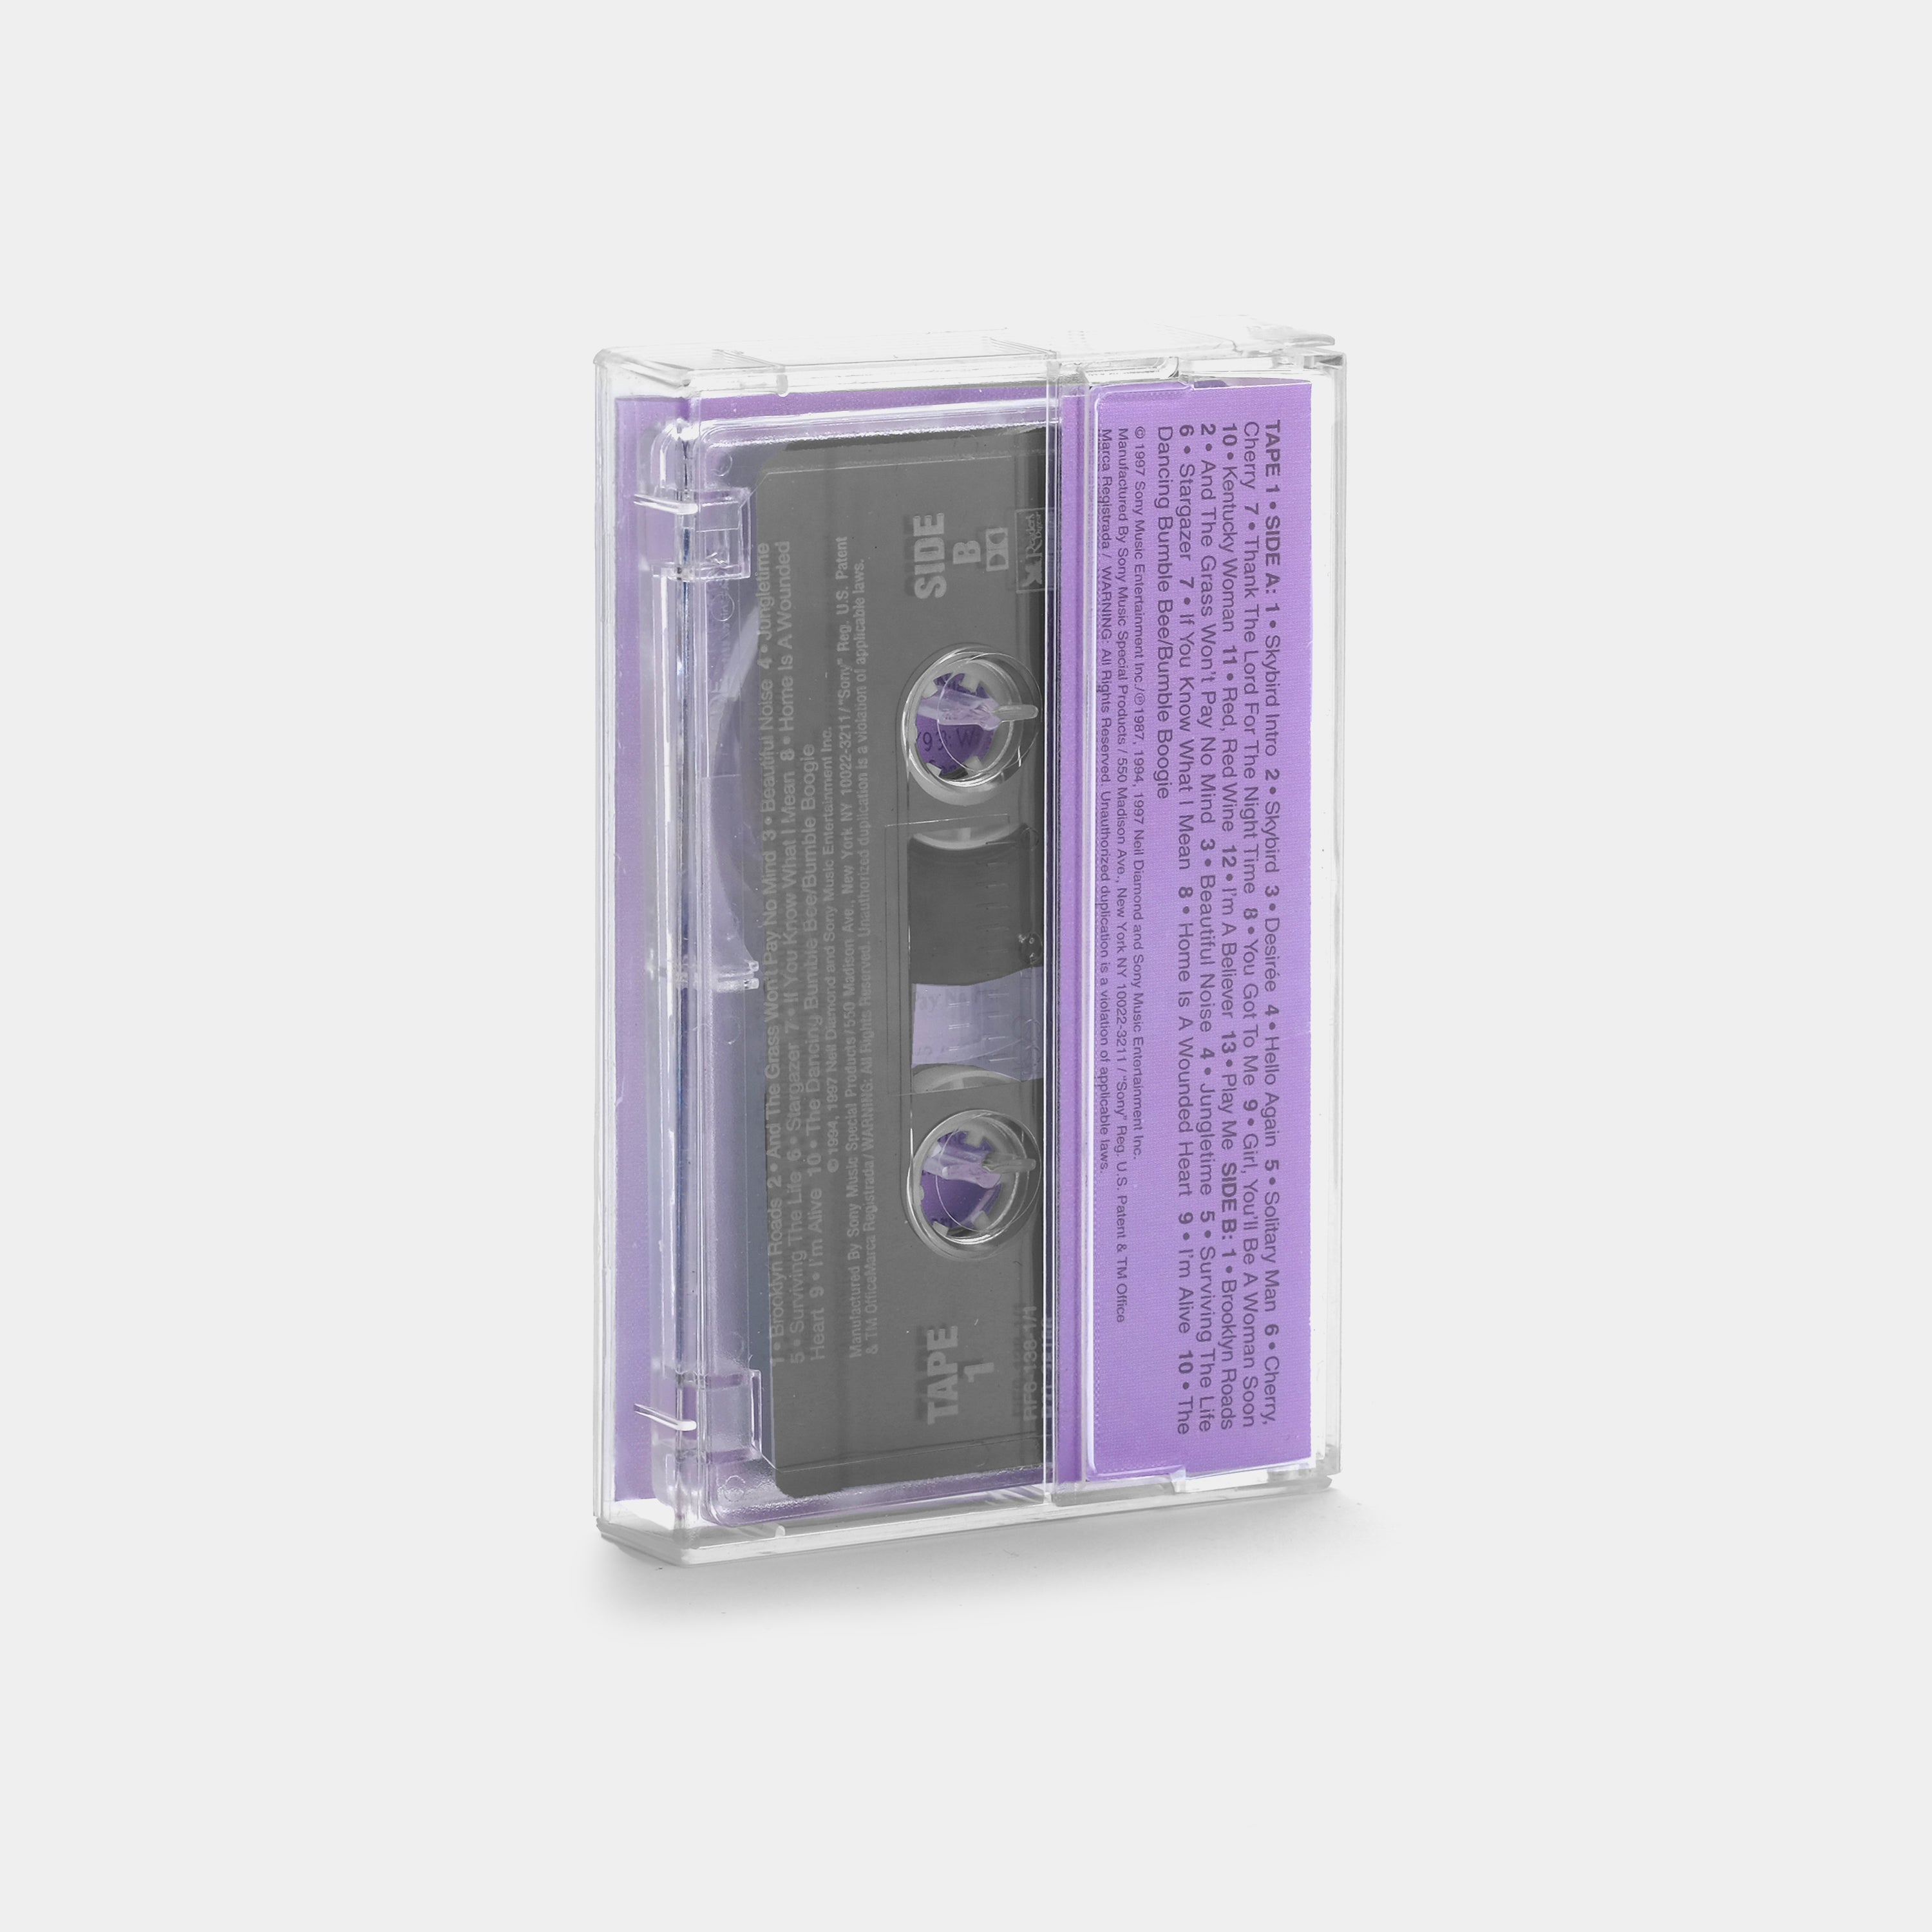 Neil Diamond - Live In Concert (Tape 1) Cassette Tape